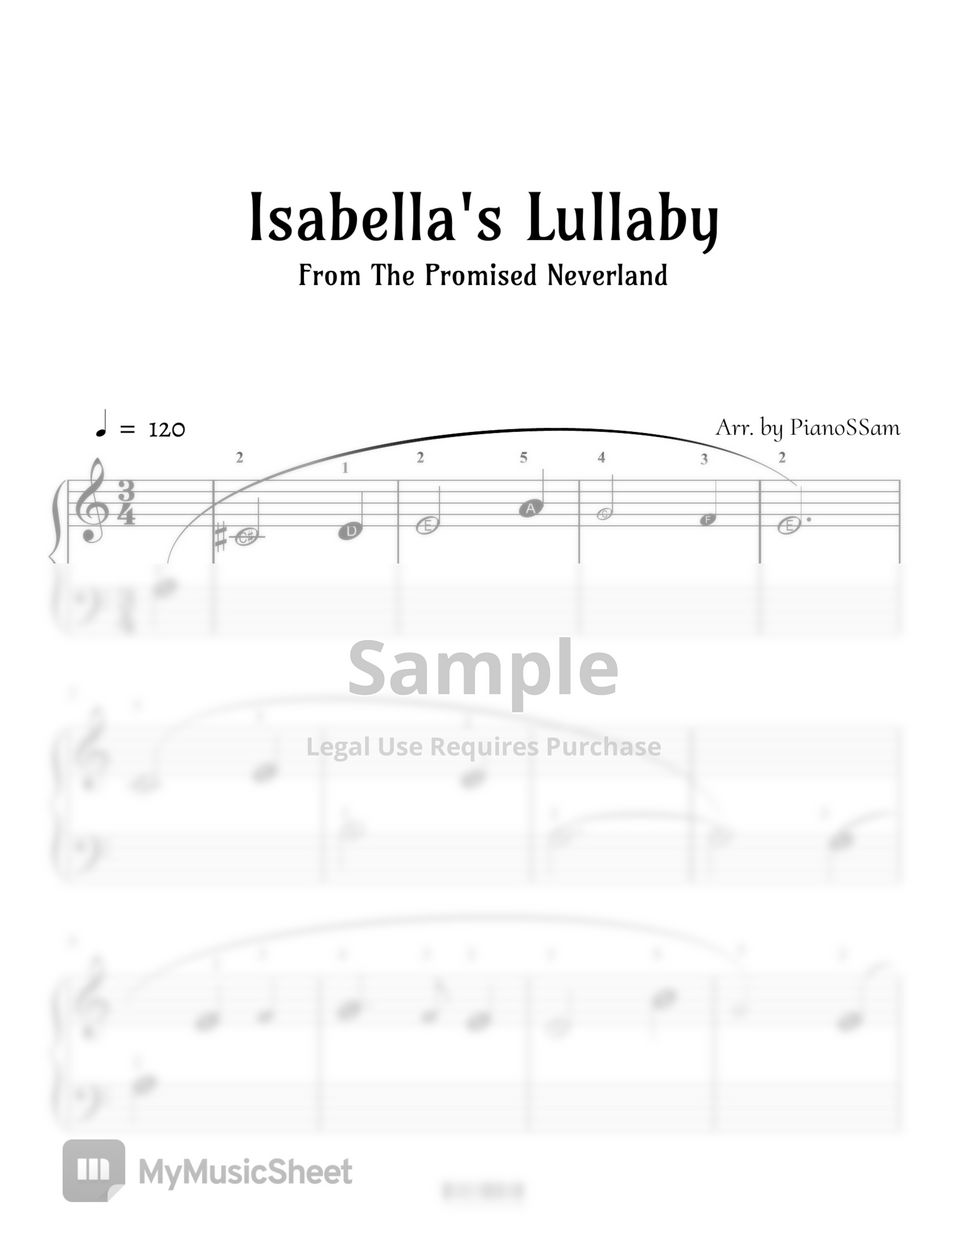 小畑貴裕 - Isabella's Lullaby - 約束のネバーランド The Promised Neverland (약속의 네버랜드) by PianoSSam